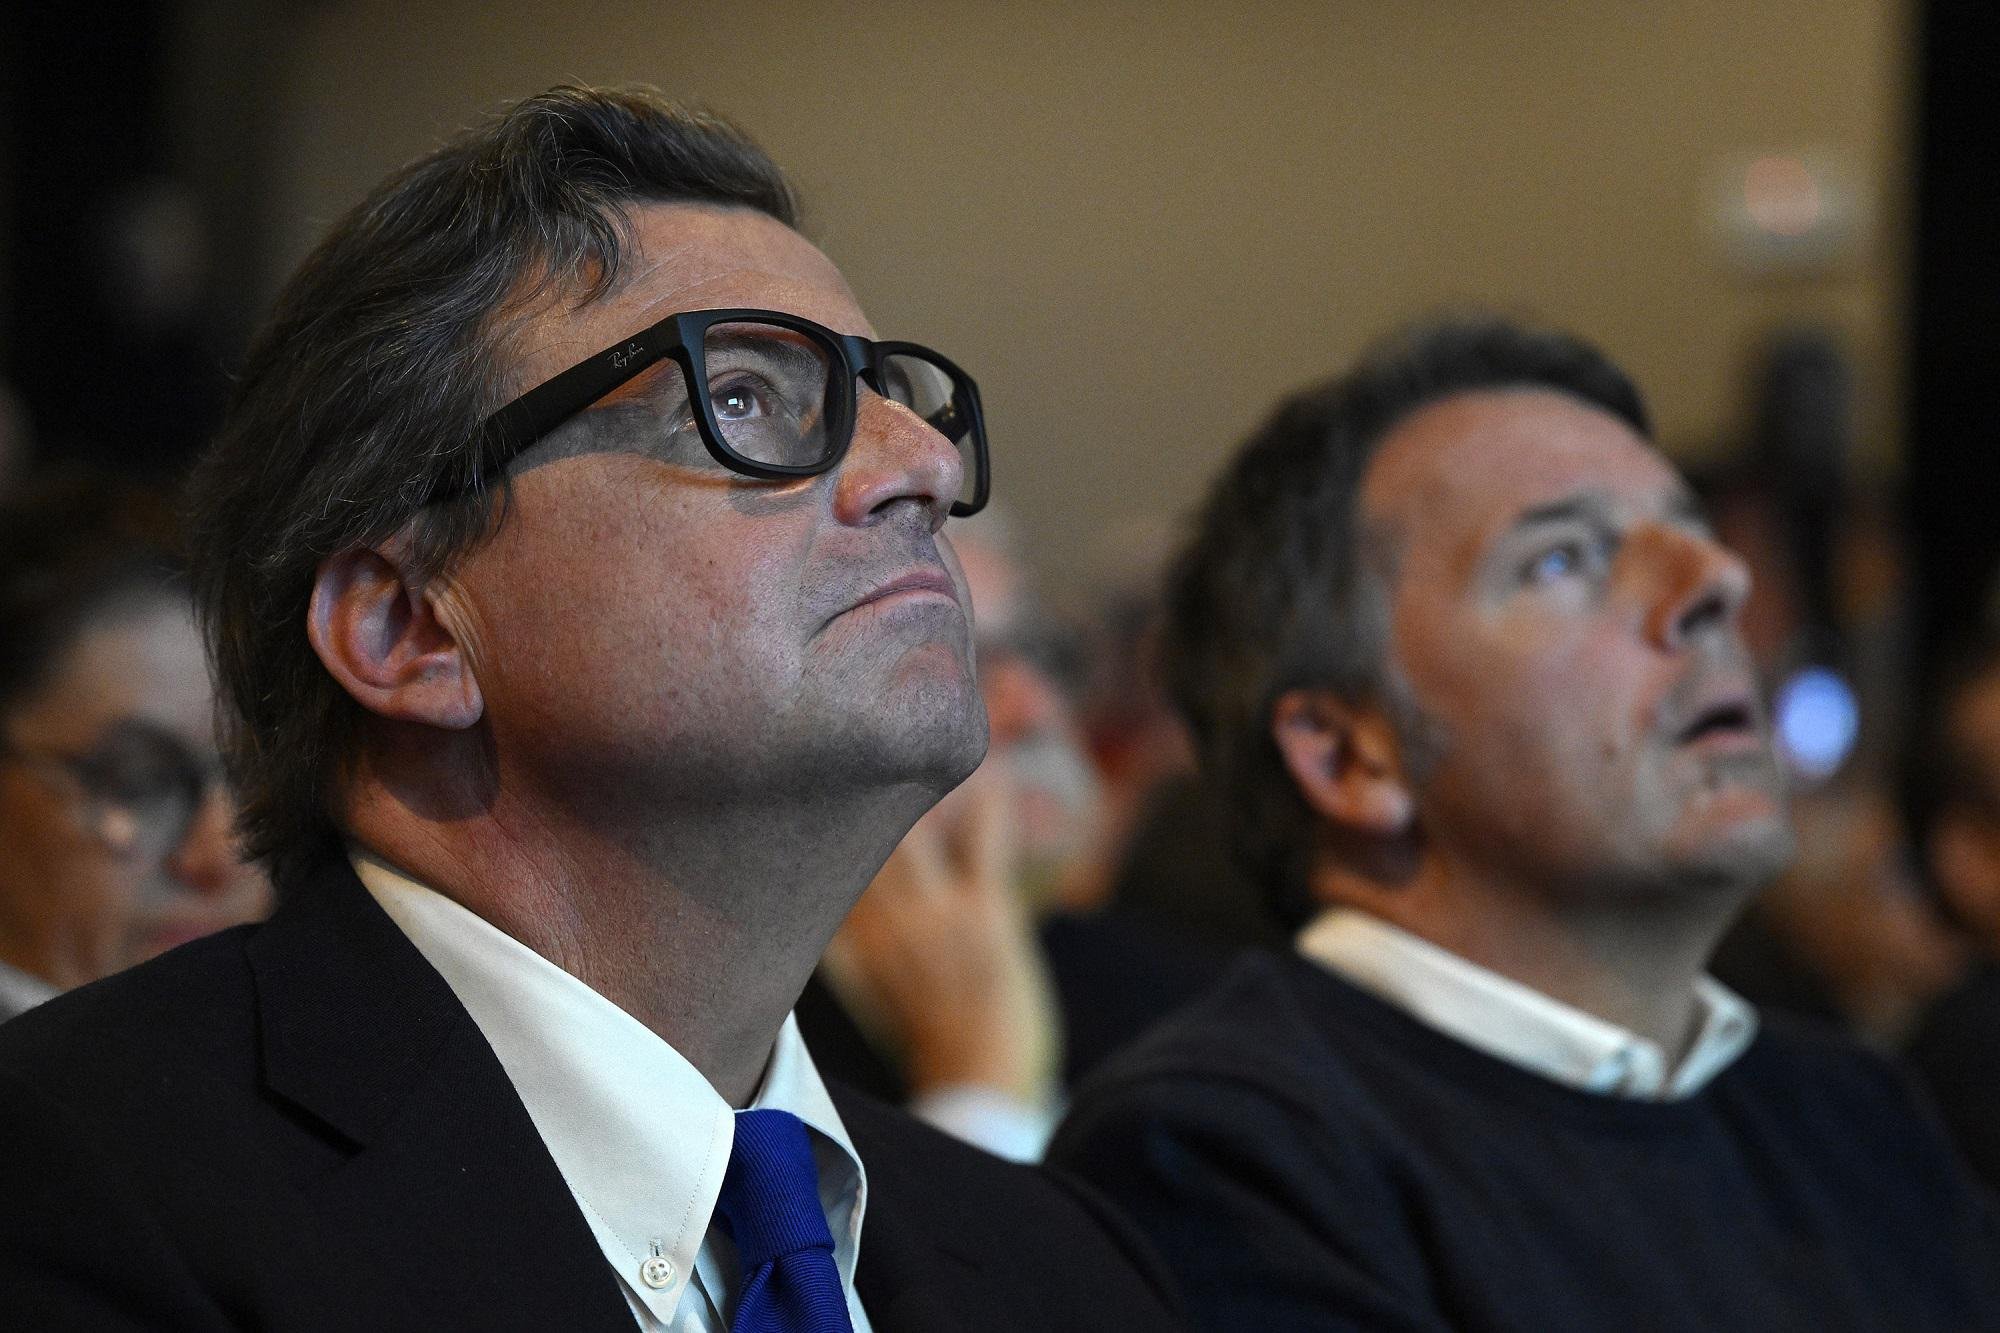 Terzo Polo, partito unico addio: Calenda e Renzi si dividono tra accuse reciproche